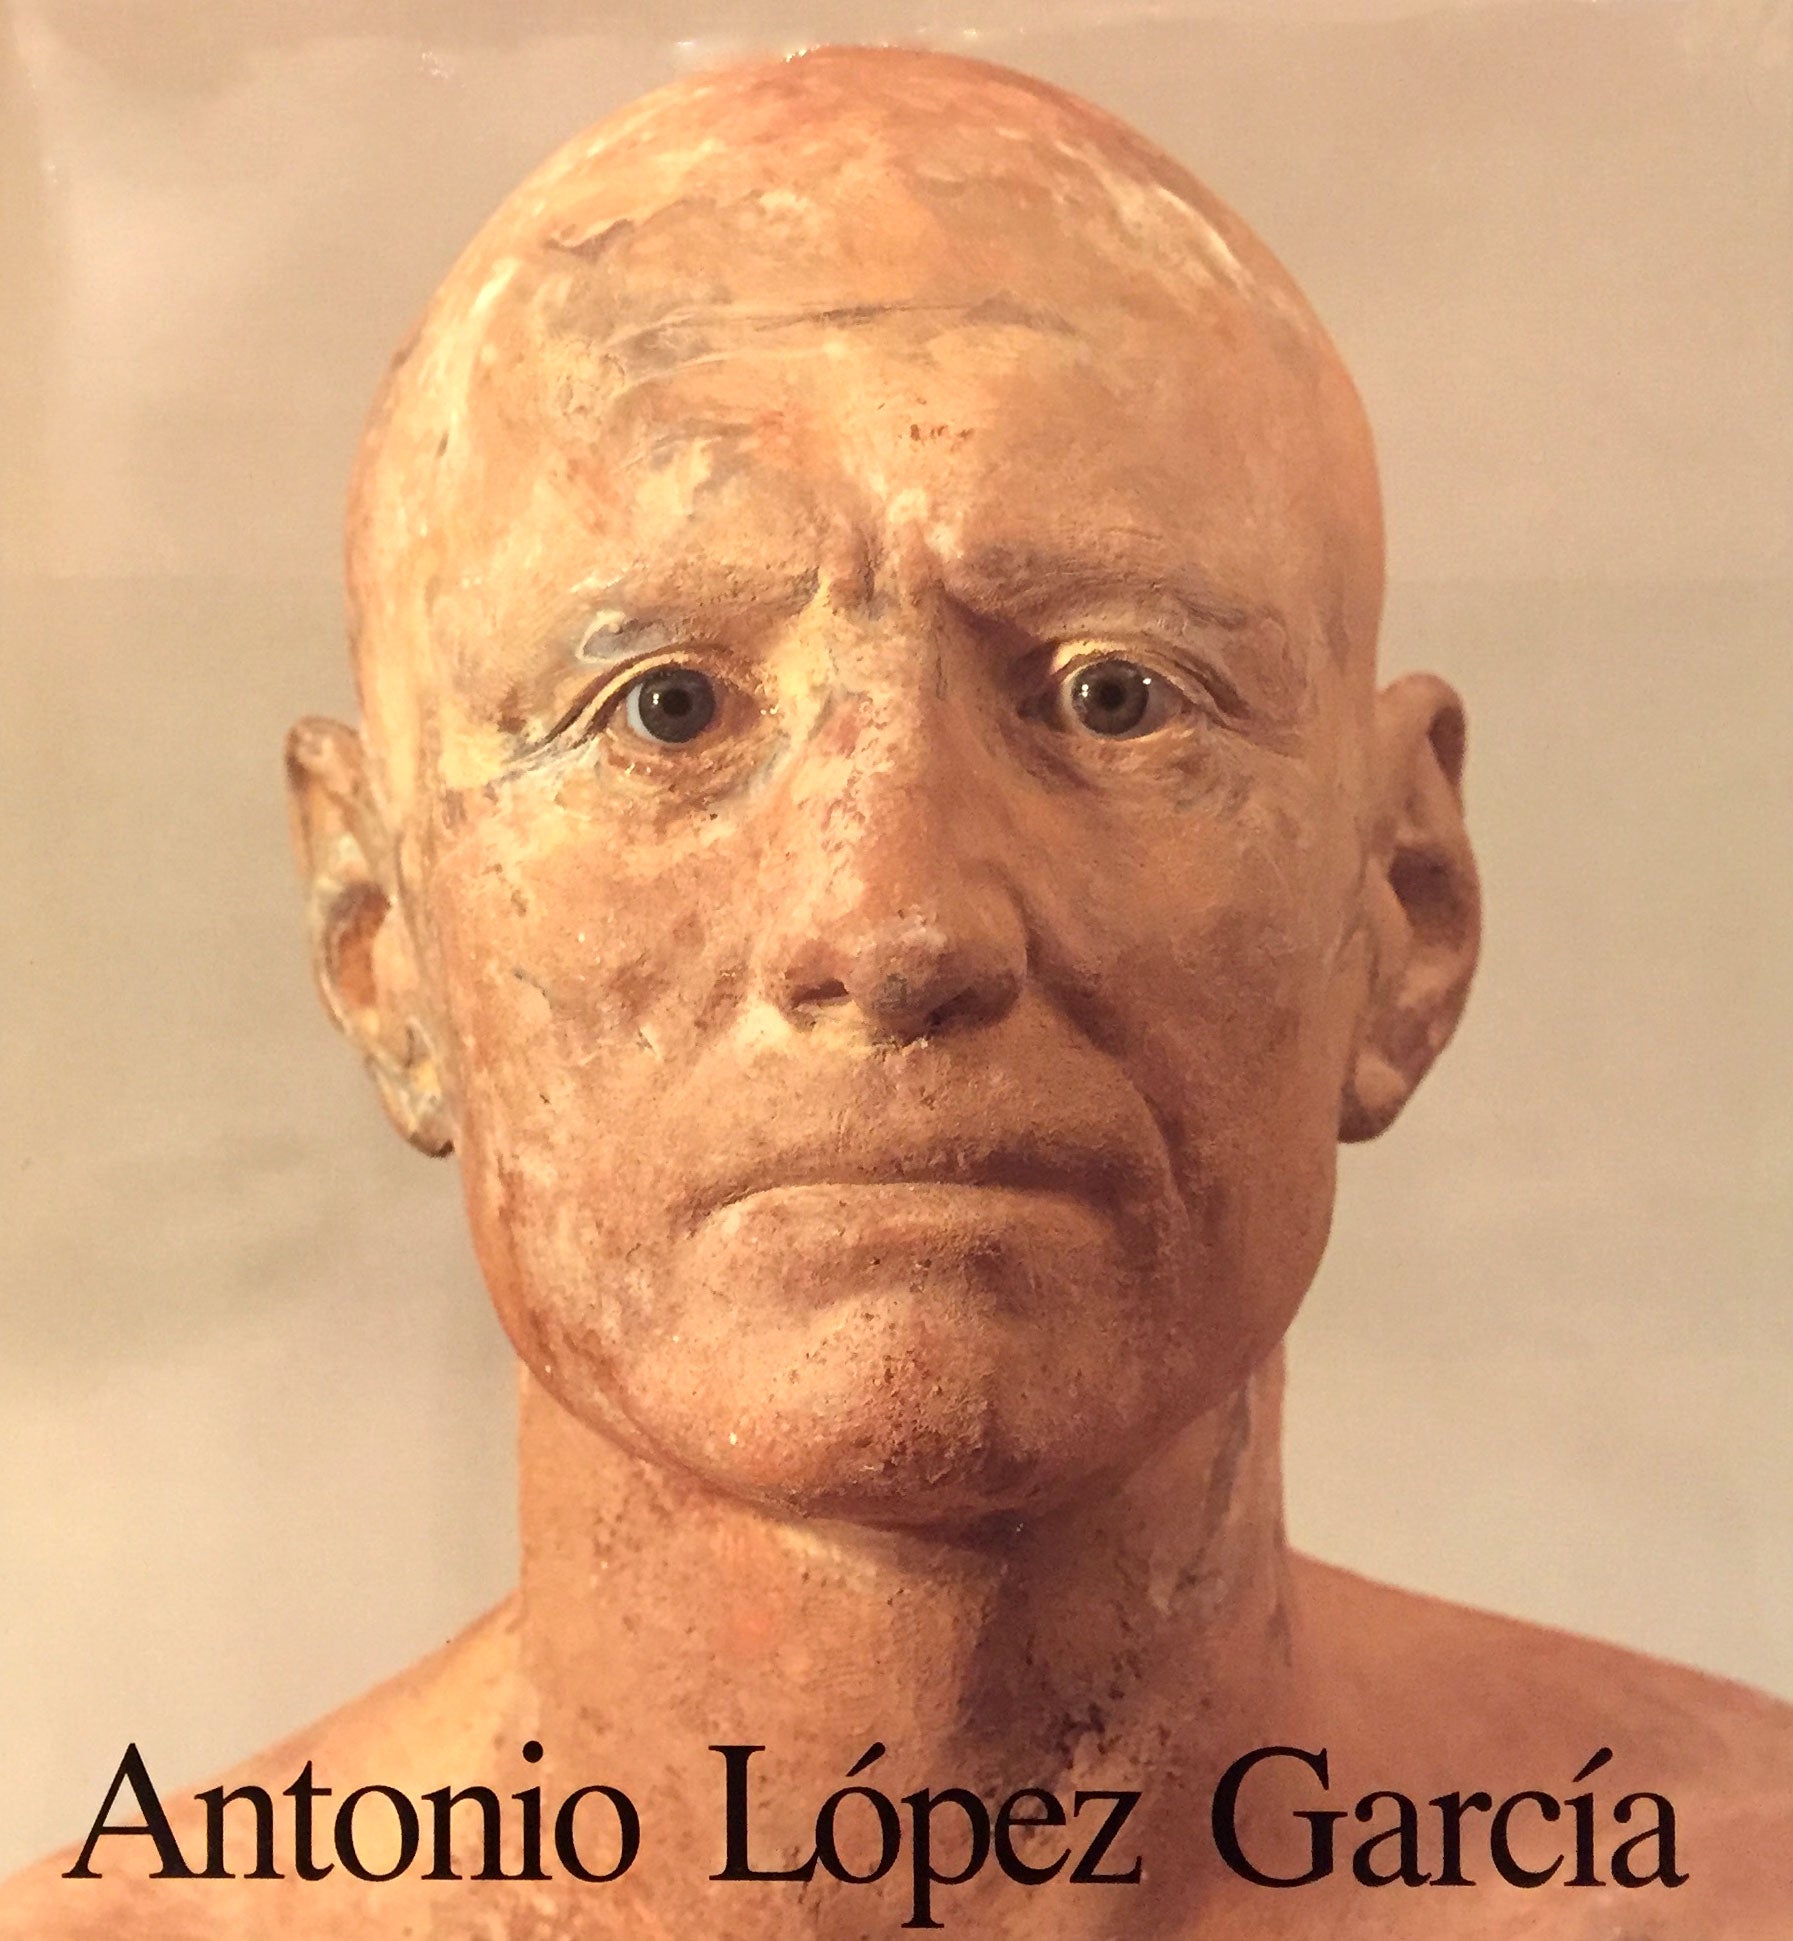 ANTONIO LOPEZ GARCIA | Michael Brenson, Edward J. Sullivan